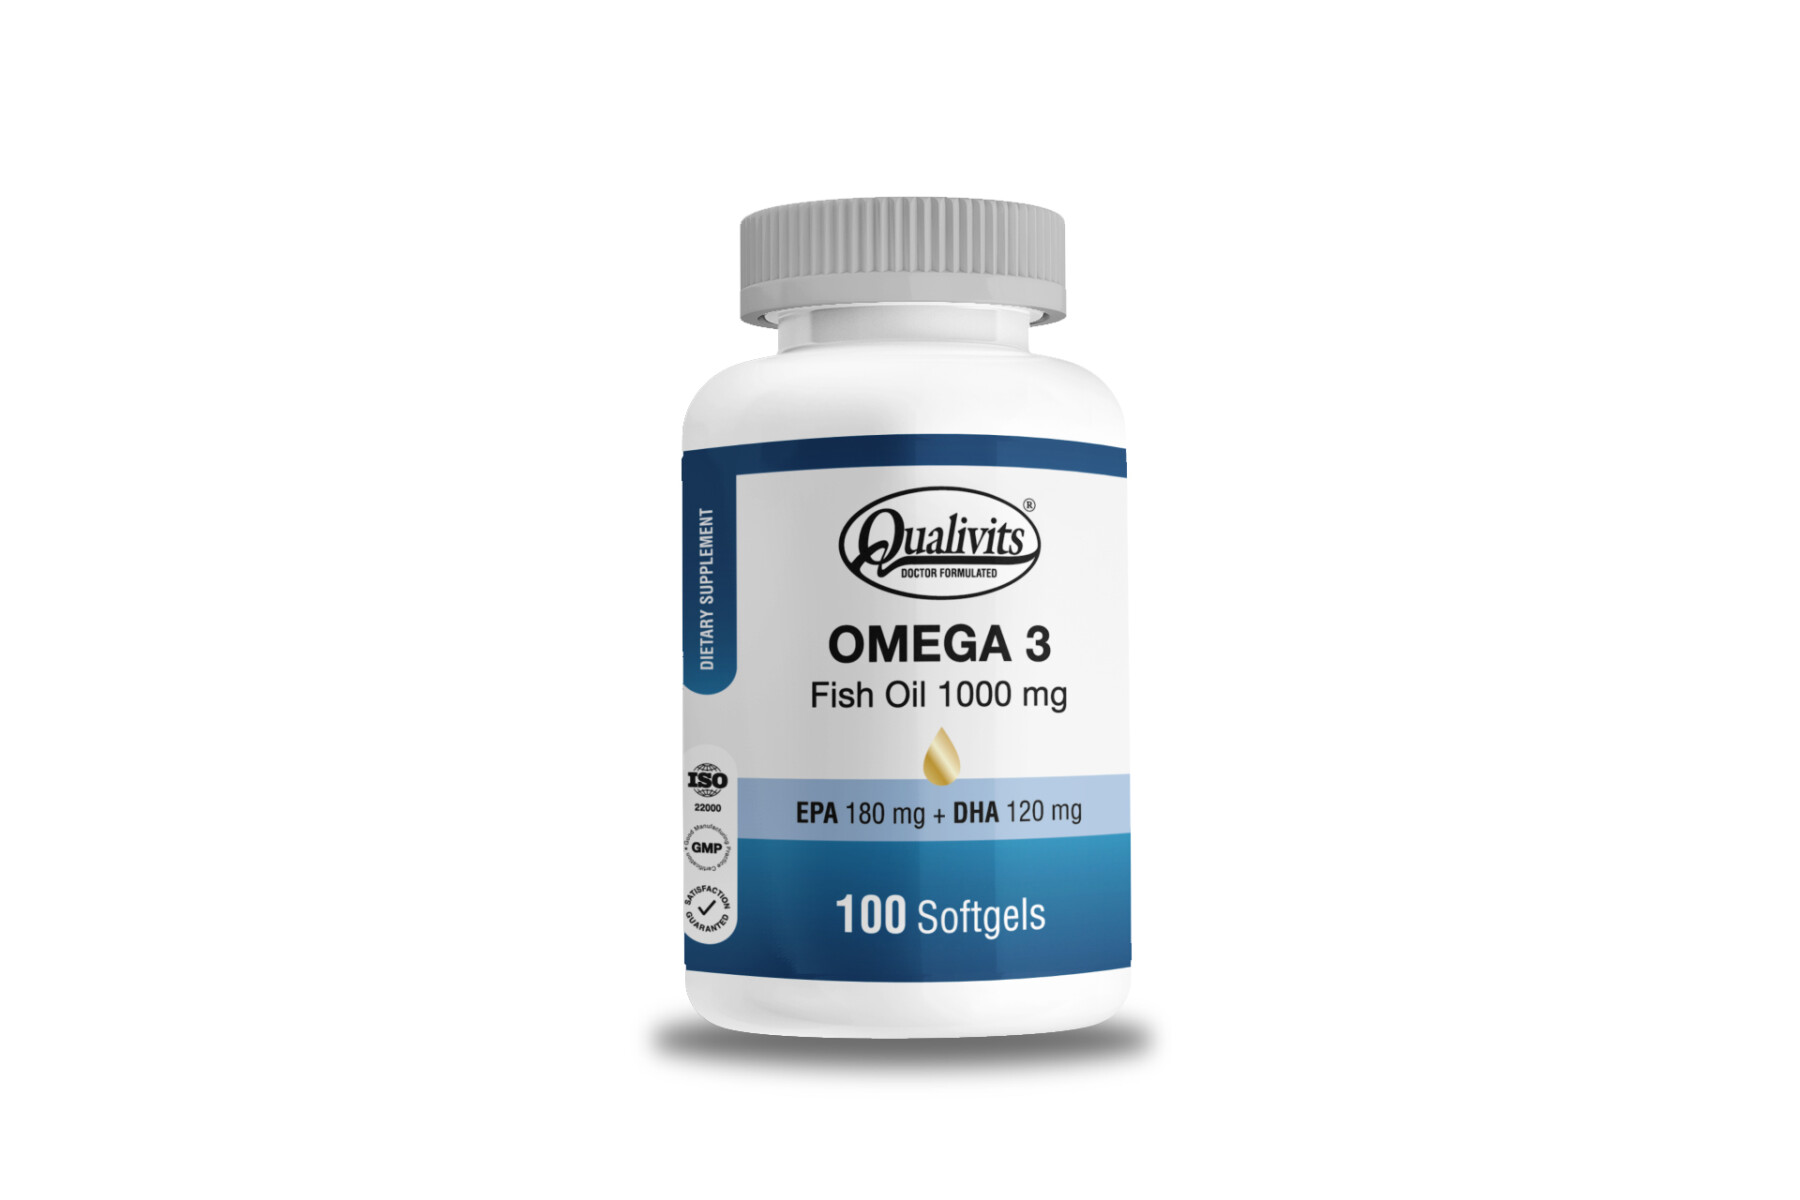 Qualivits Omega 3 - Fish Oil 1000 mg 100 Softgels 